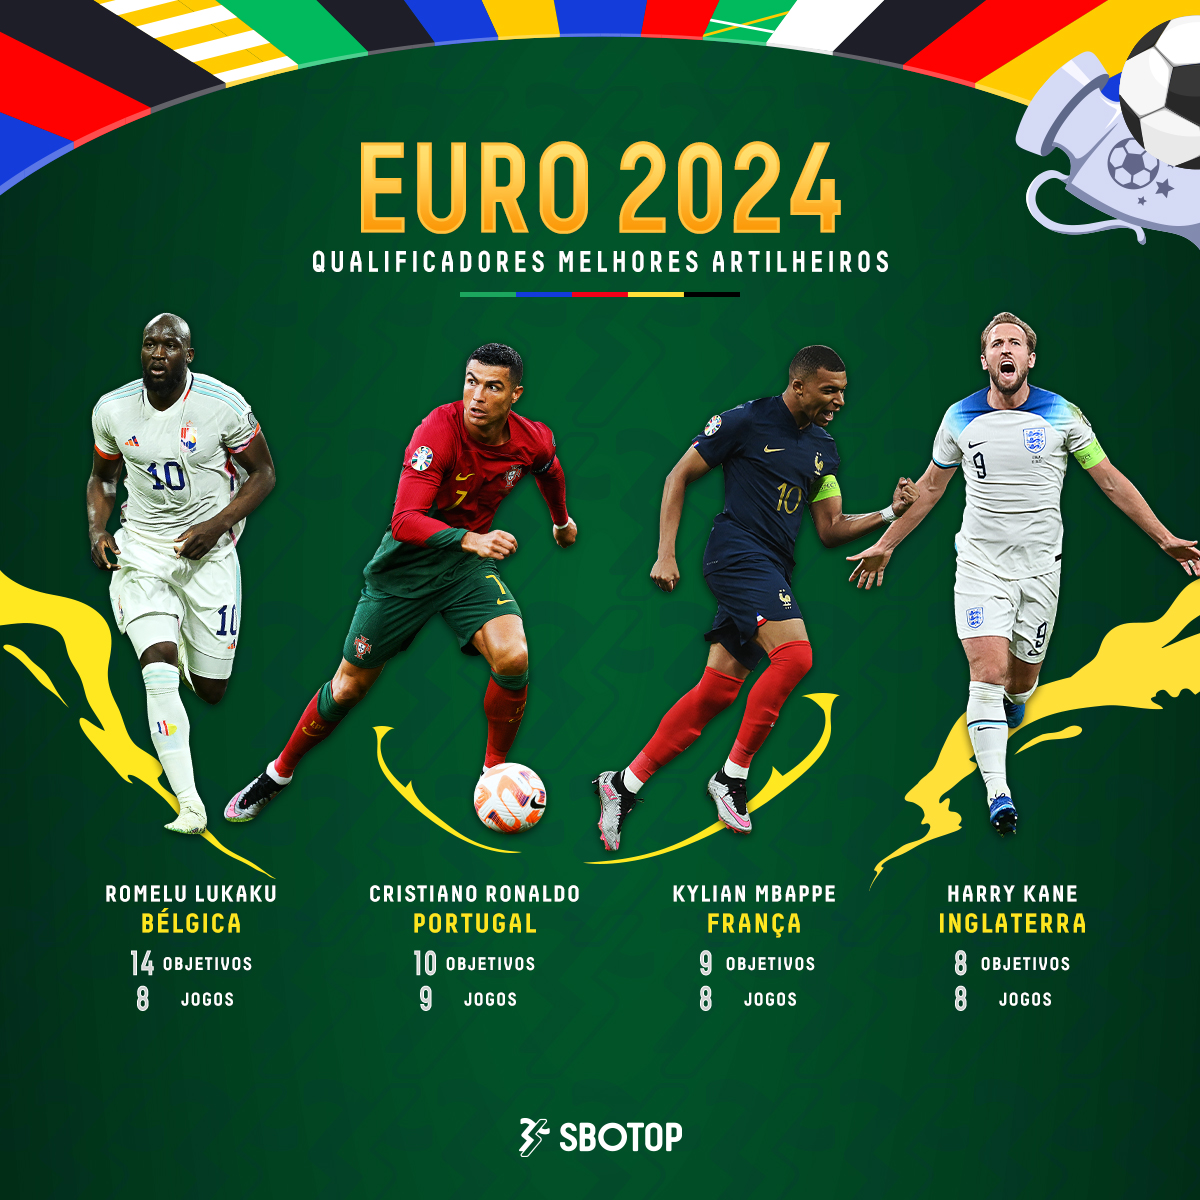 Grandes nomes se destacaram durante as eliminatórias. Conseguirão estes quatro permanecer na sua melhor forma e liderar os seus respectivos países para conquistar o título do #EURO2024?